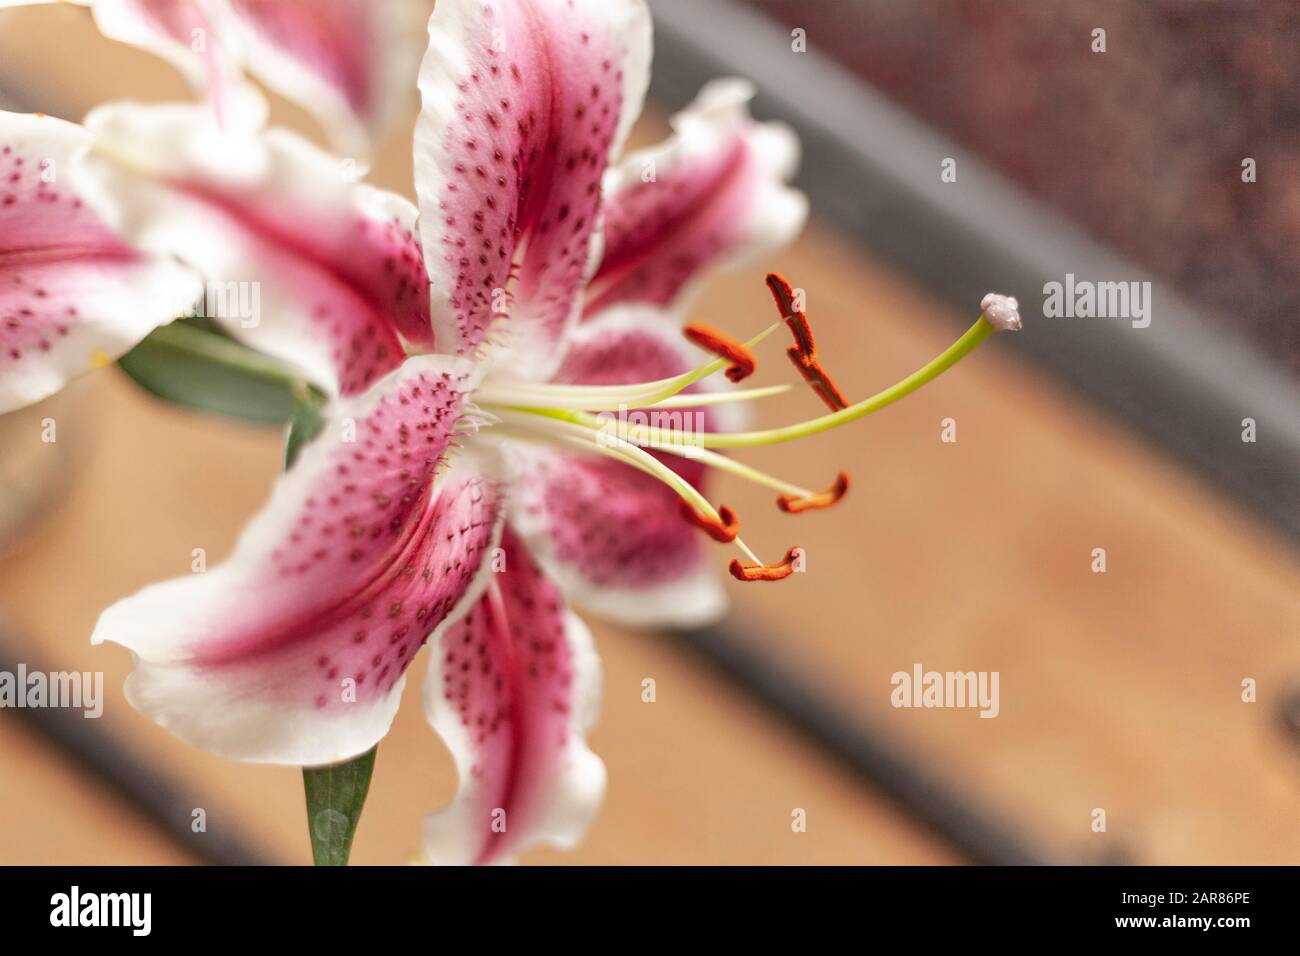 Un bouquet de lys Stargazer avec des pétales roses et blancs profonds et du pollen d'orange sur les étamines. Banque D'Images